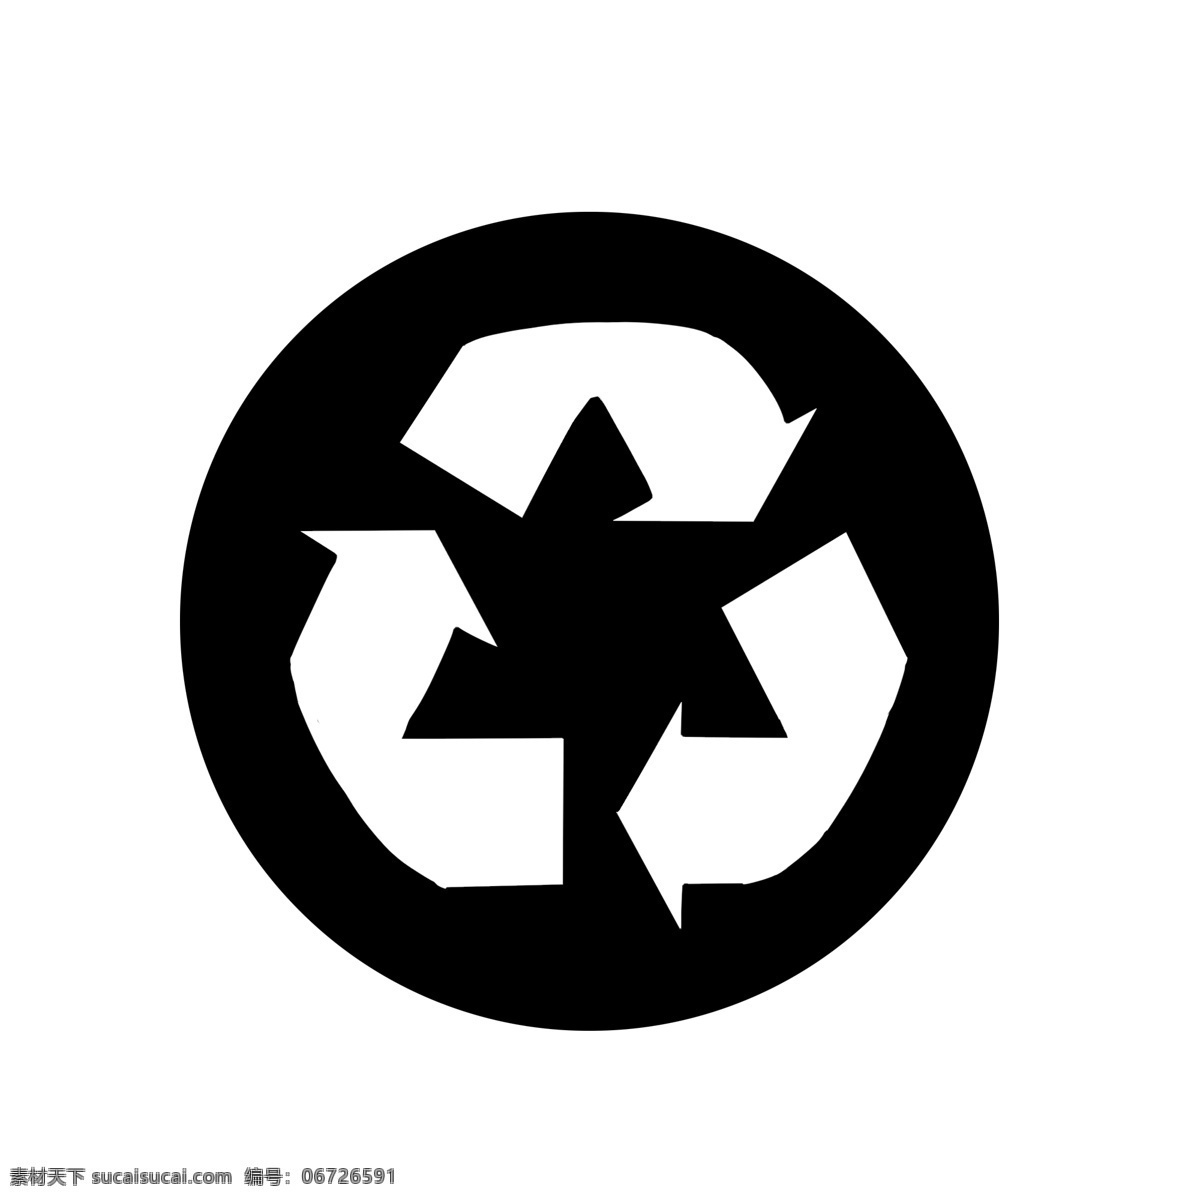 黑白 环保 标示 图案 黑白环保图案 垃圾可回收 绿色环保 清洁 可回收垃圾 卫生环保 标志图案 黑白图标